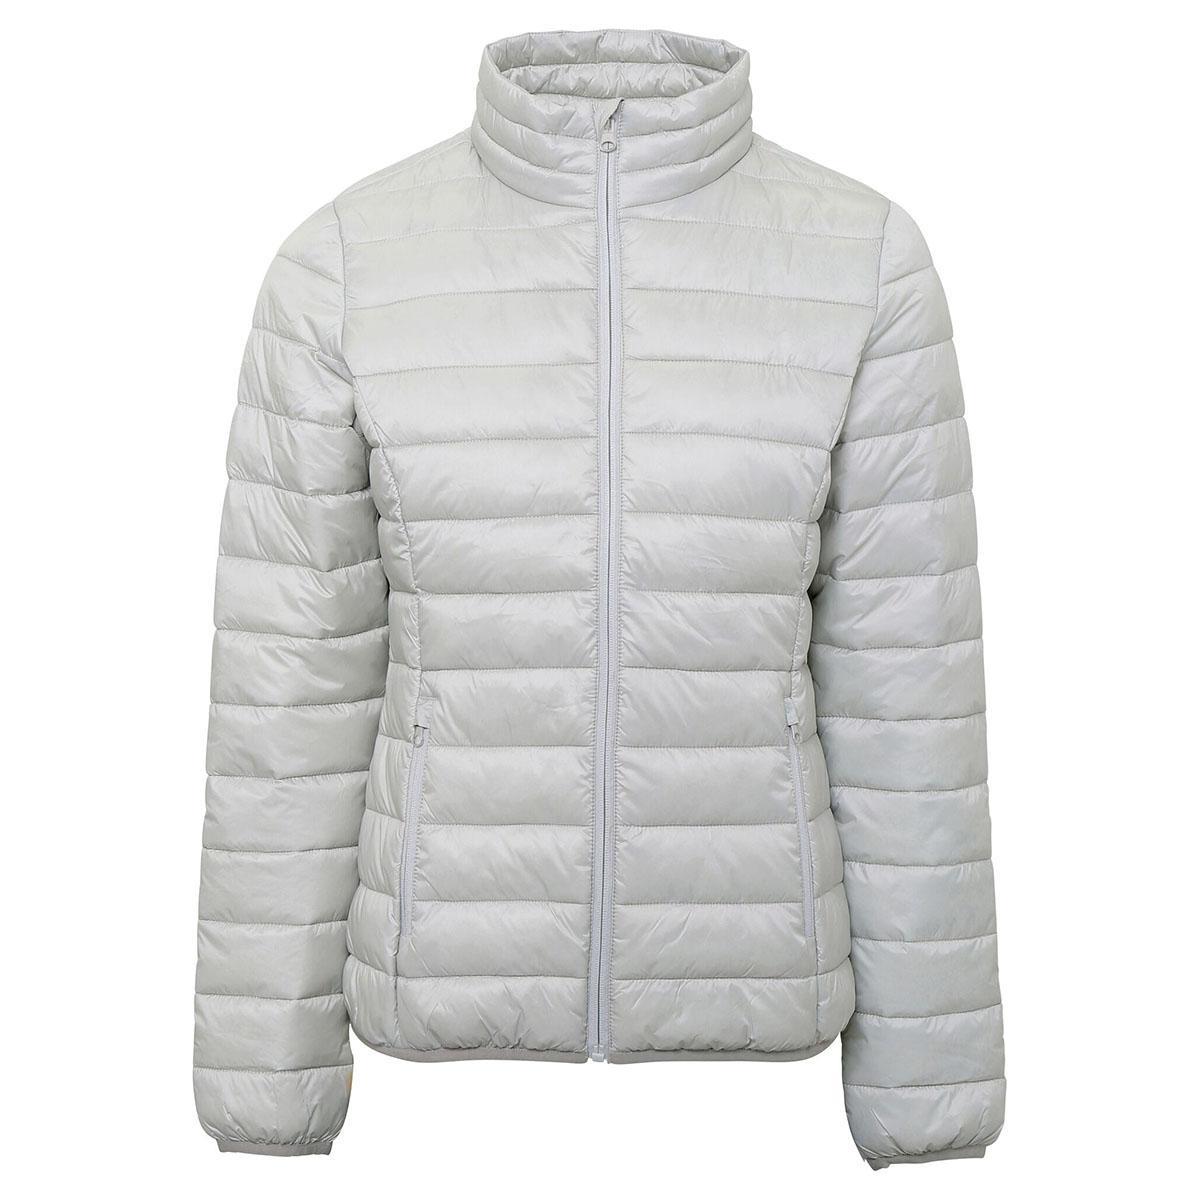 2786 Womens/Ladies Terrain Long Sleeves Padded Jacket (Silver) (XS)